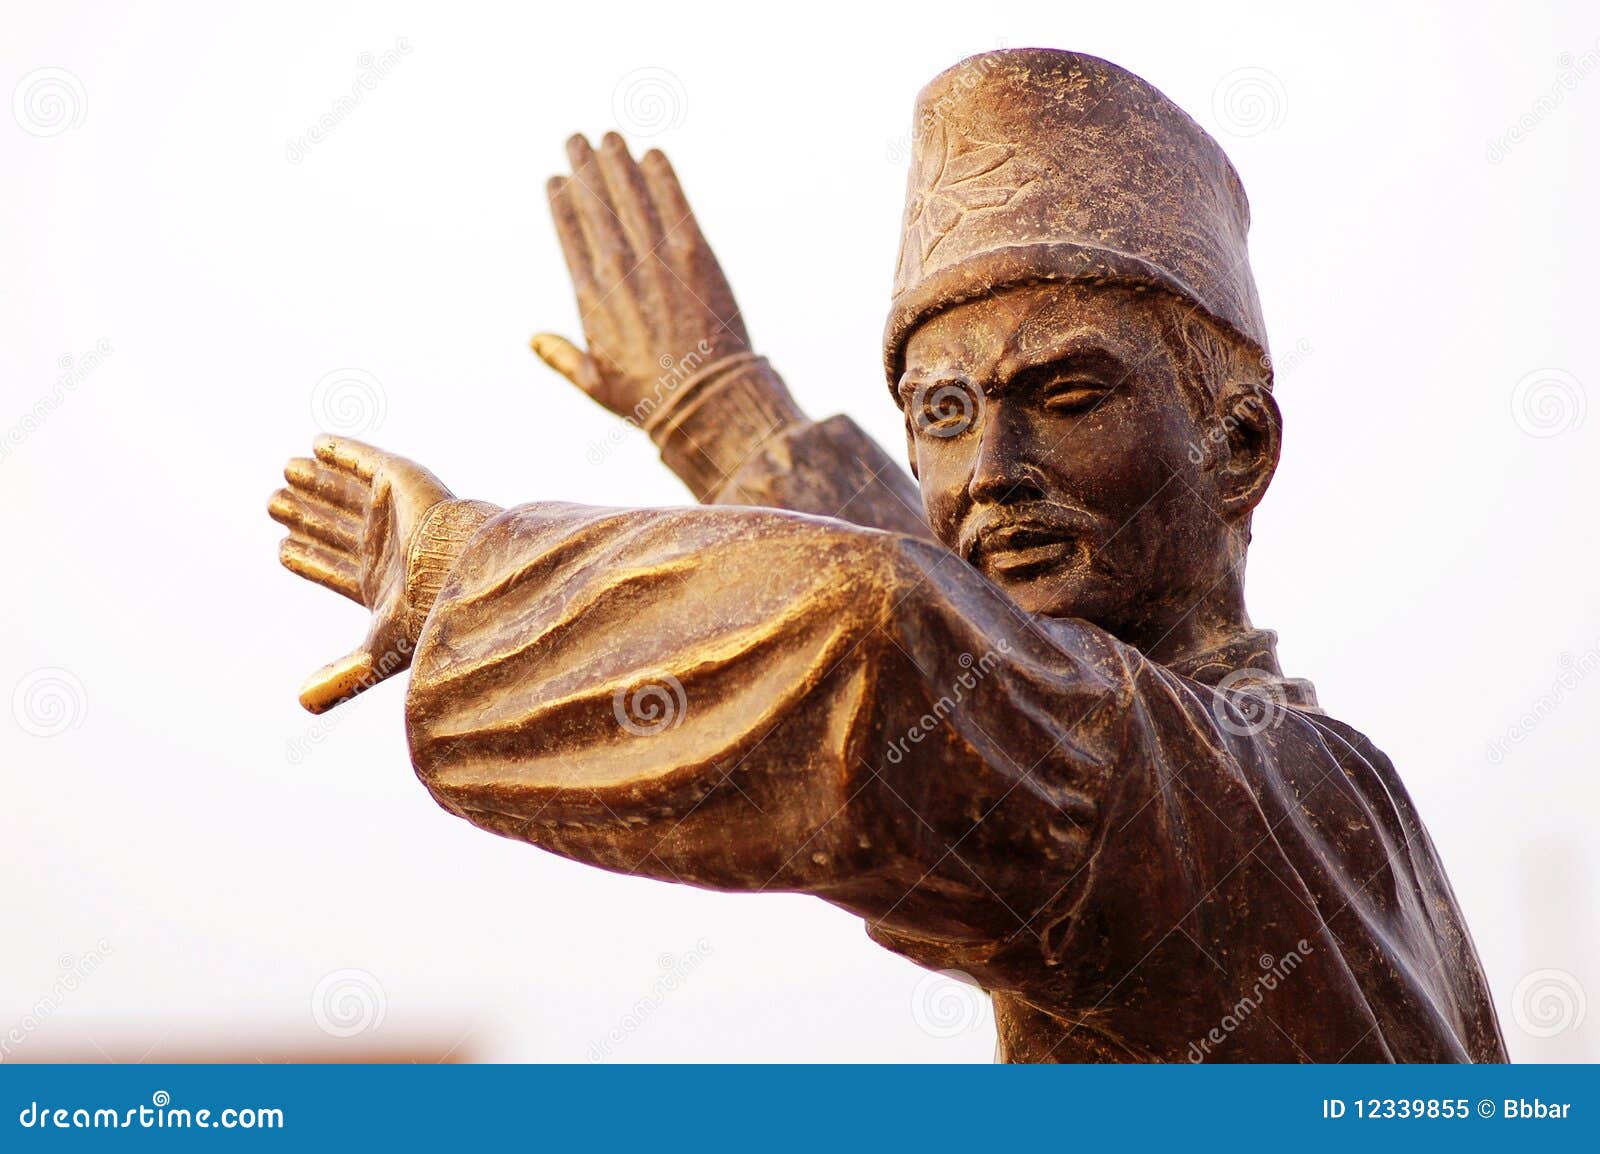 statue of uyghur dancer